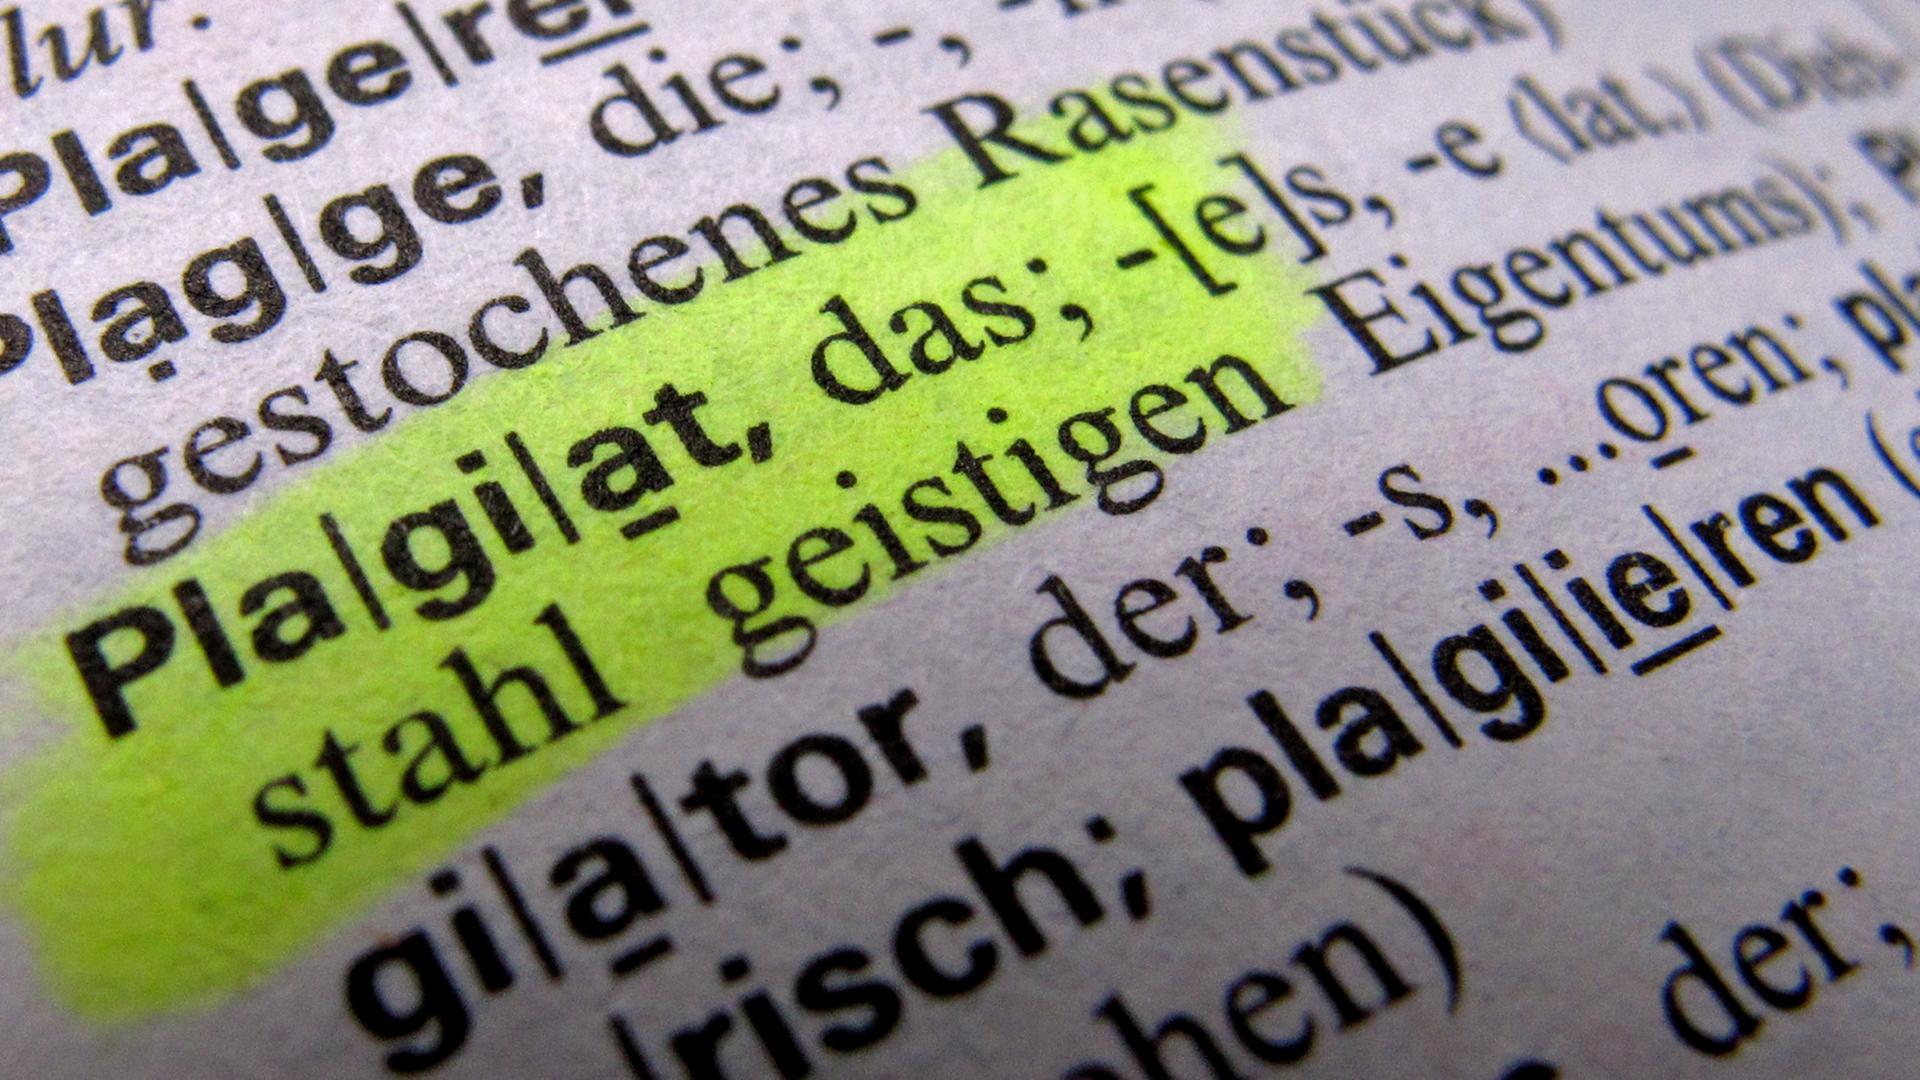 Das Wort "Plagiat" ist in einem Wörterbuch markiert.